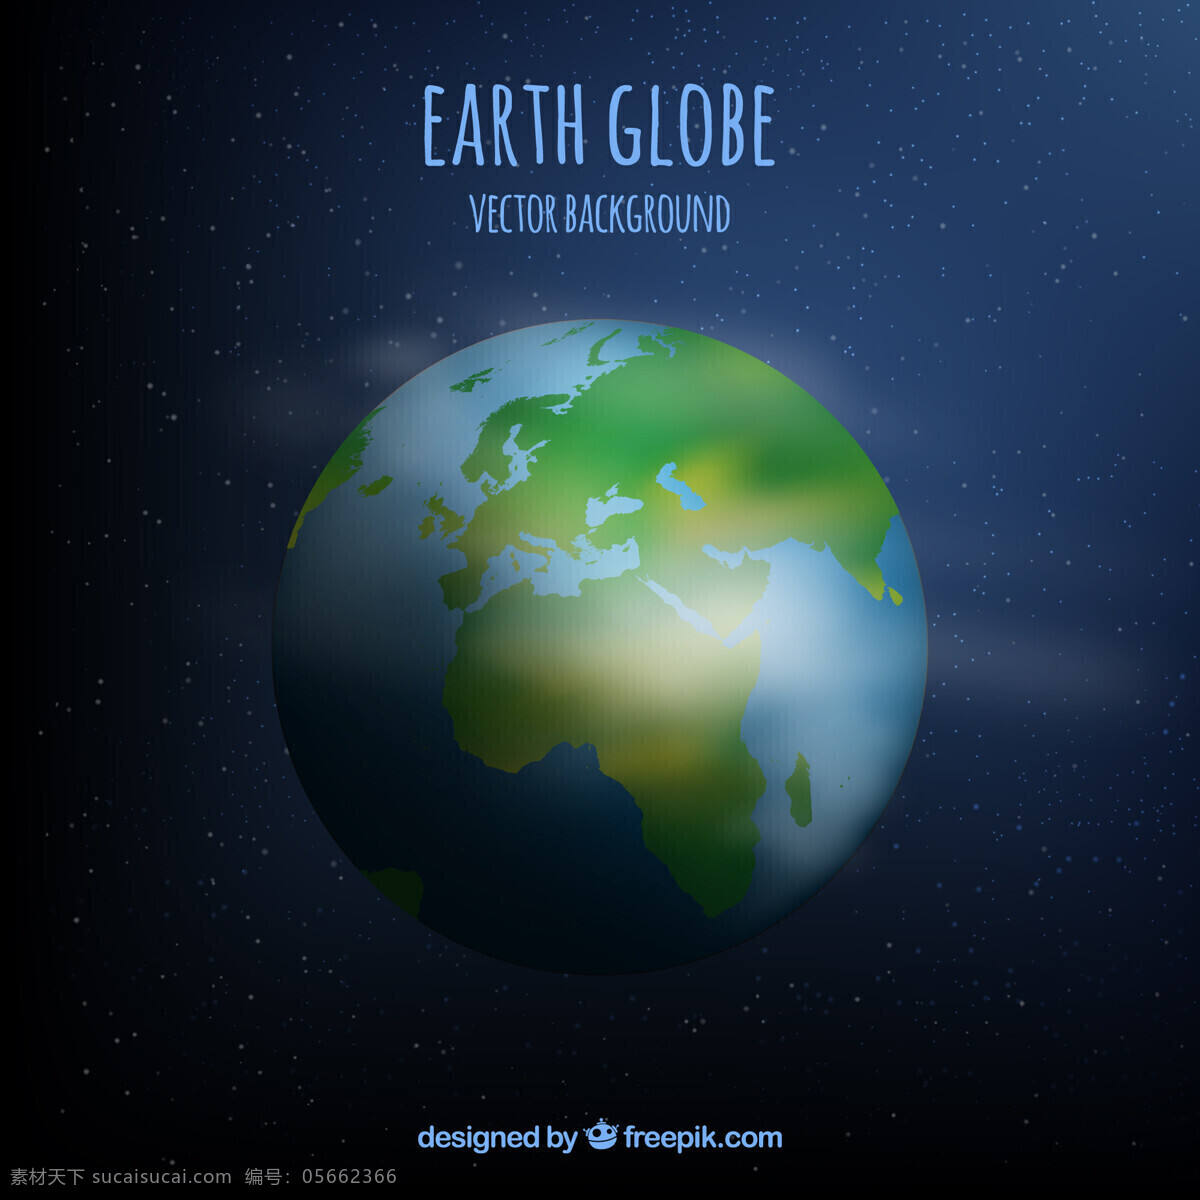 地球背景矢量 背景 水 星星 蓝色背景 地图 绿色 蓝色 绿色背景 世界 世界地图 地球 壁纸 夜晚 矢量背景 行星 非洲